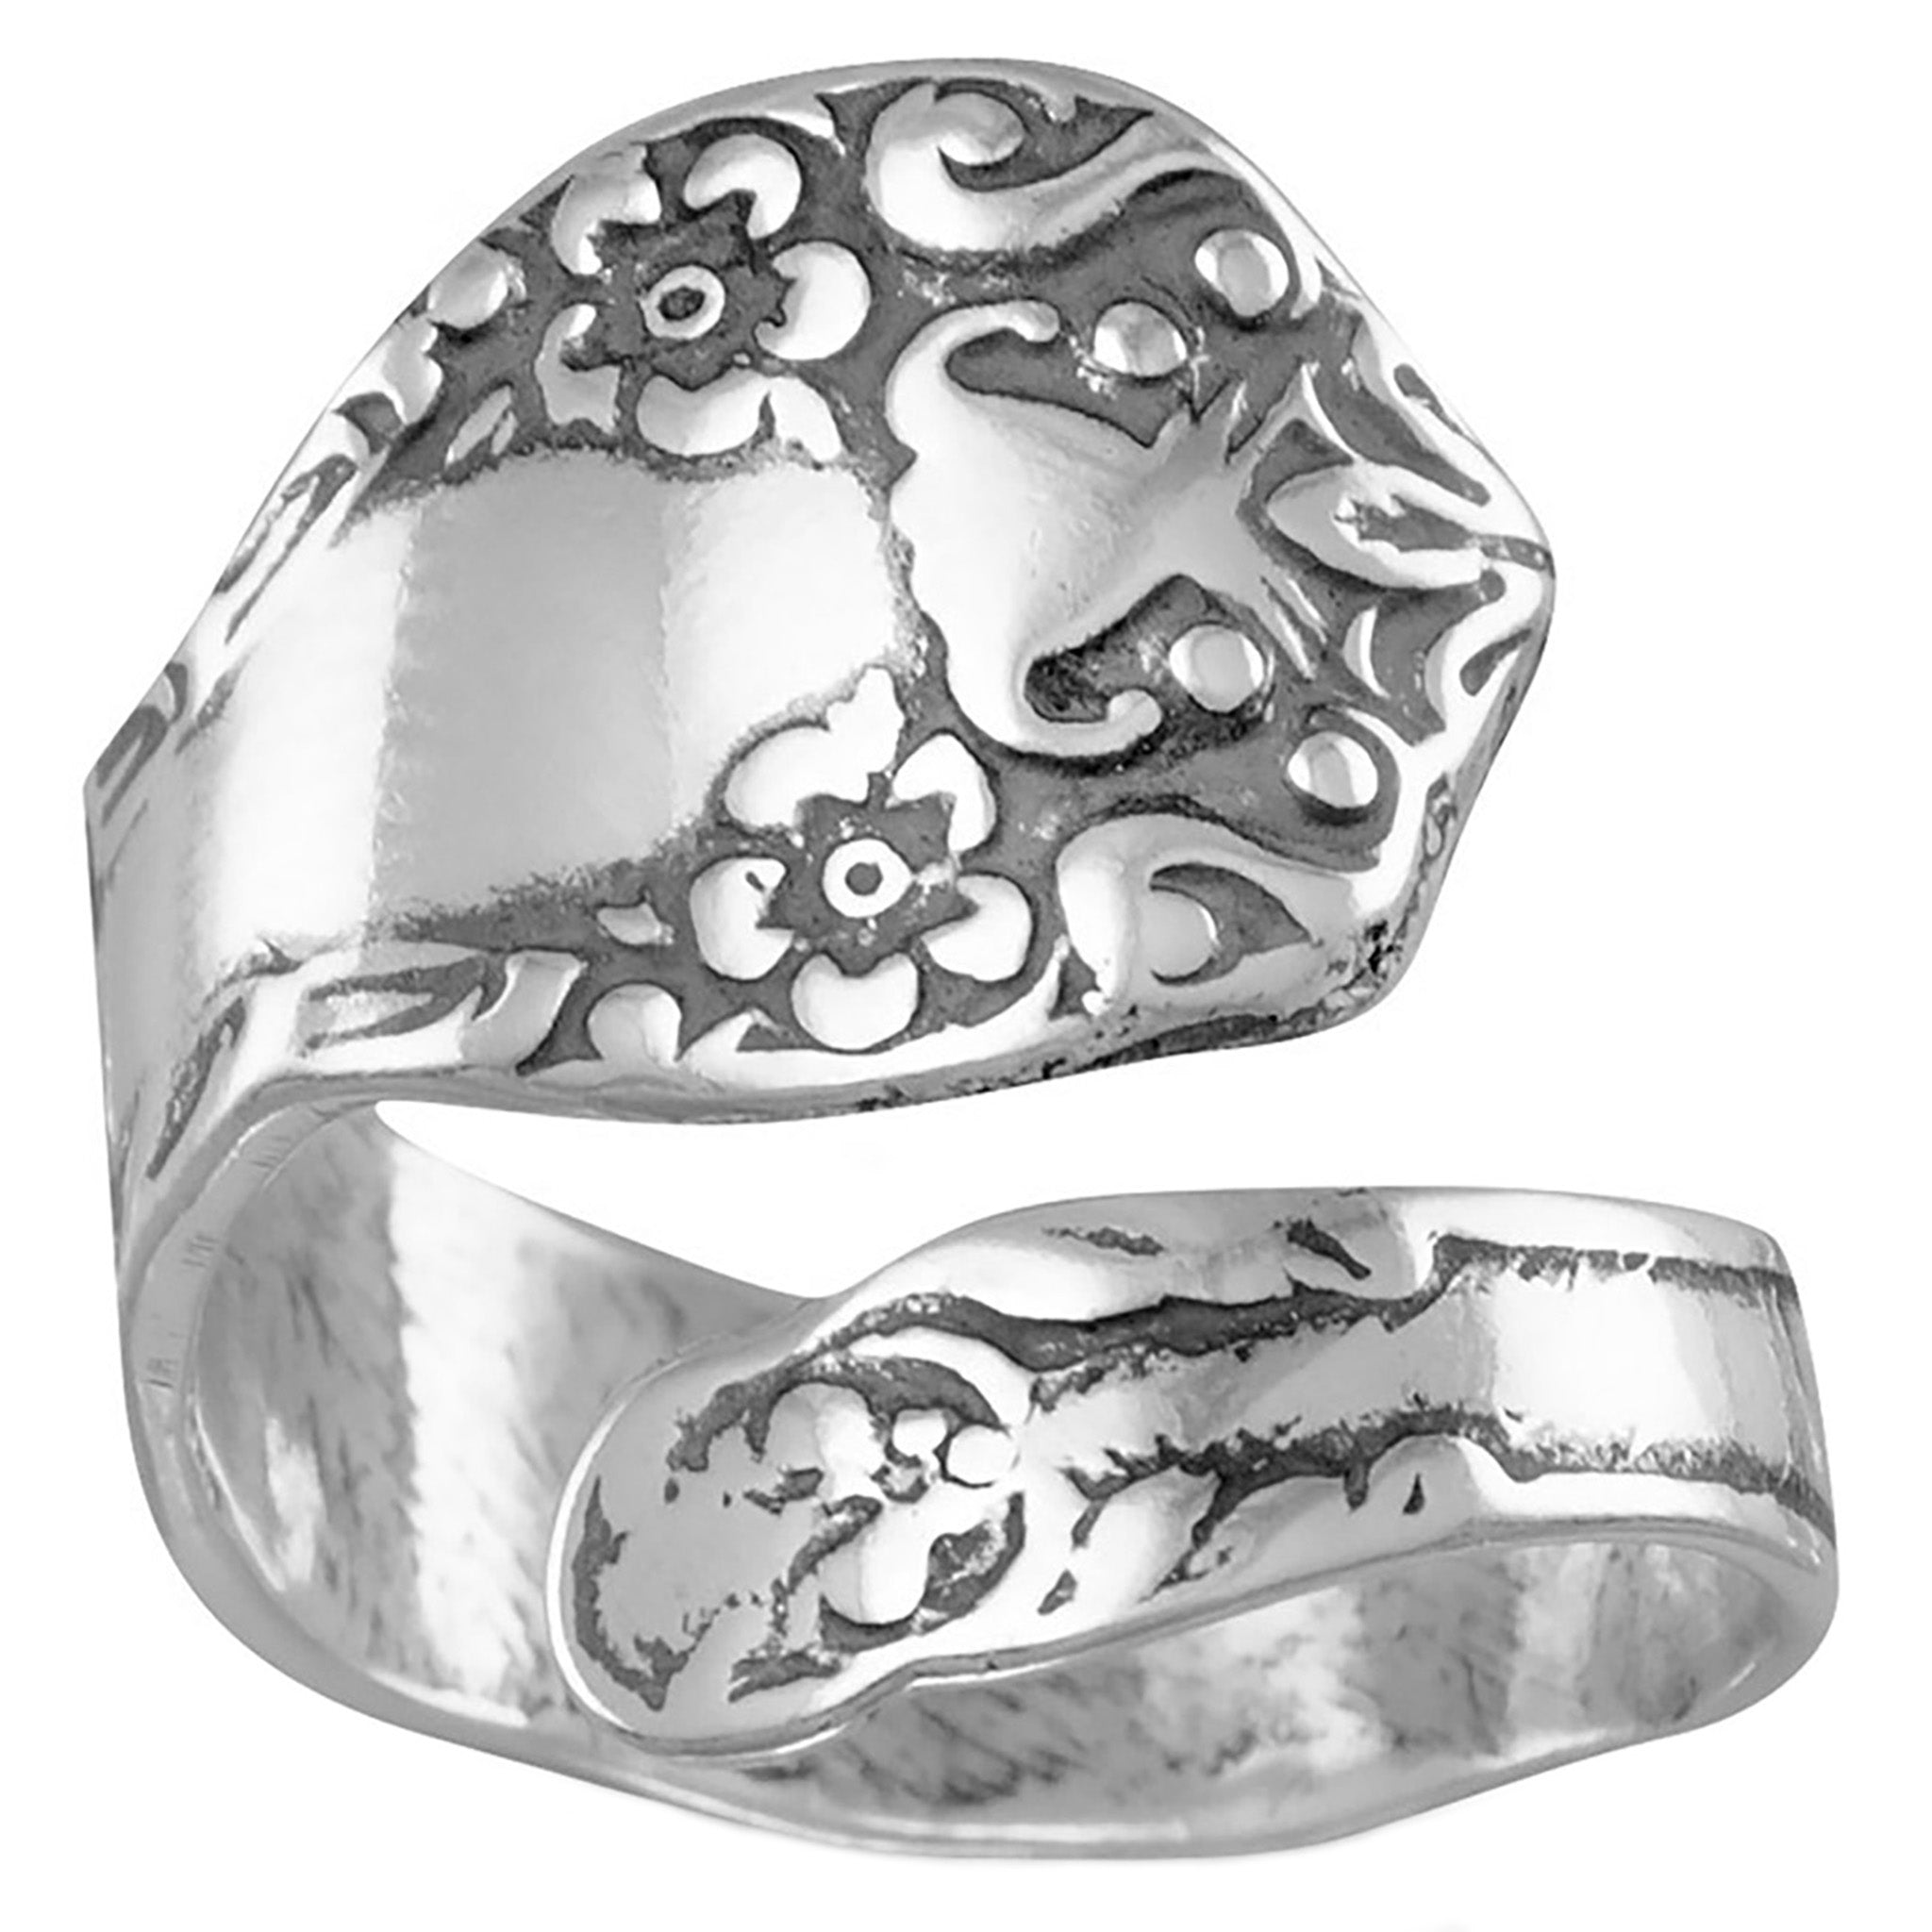 Adjustable Floral Design Spoon Ring